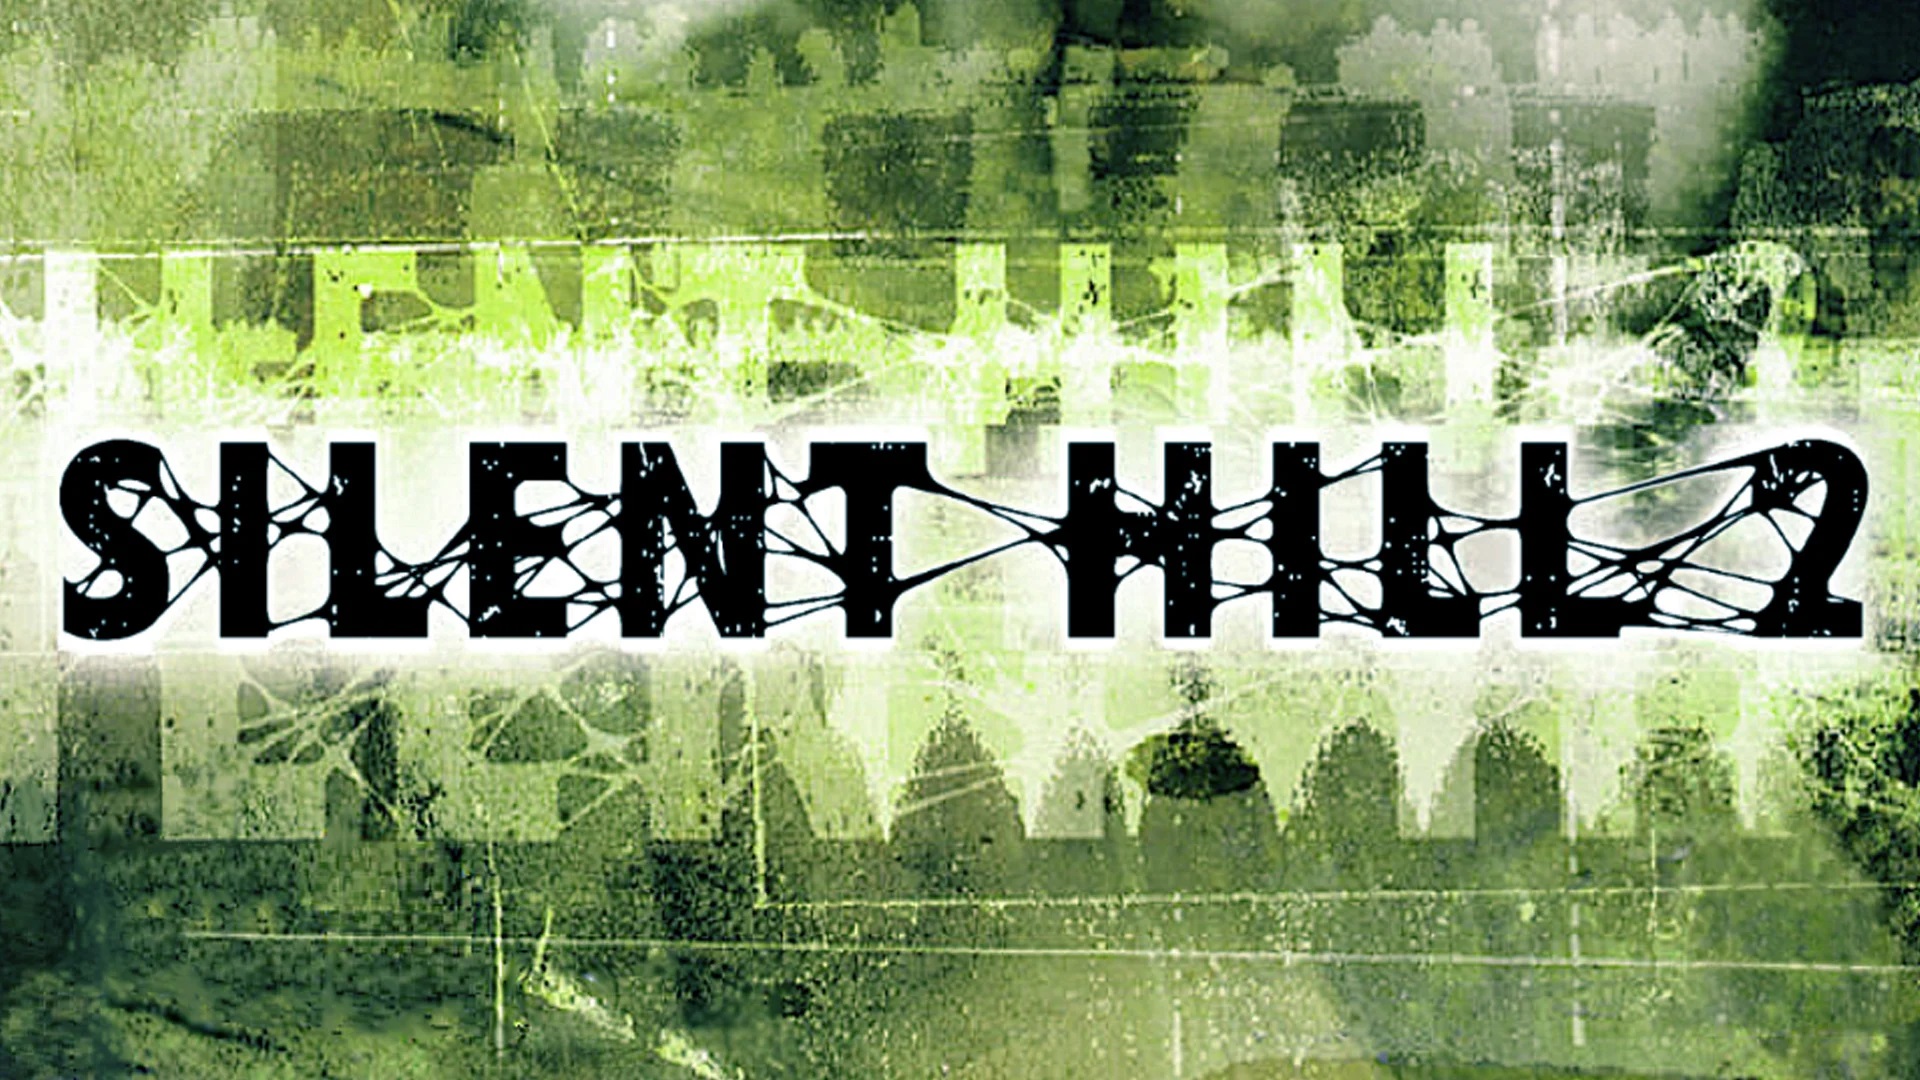 فاش شدن تصاویر احتمالی از ریمیک بازی Silent Hill 2 